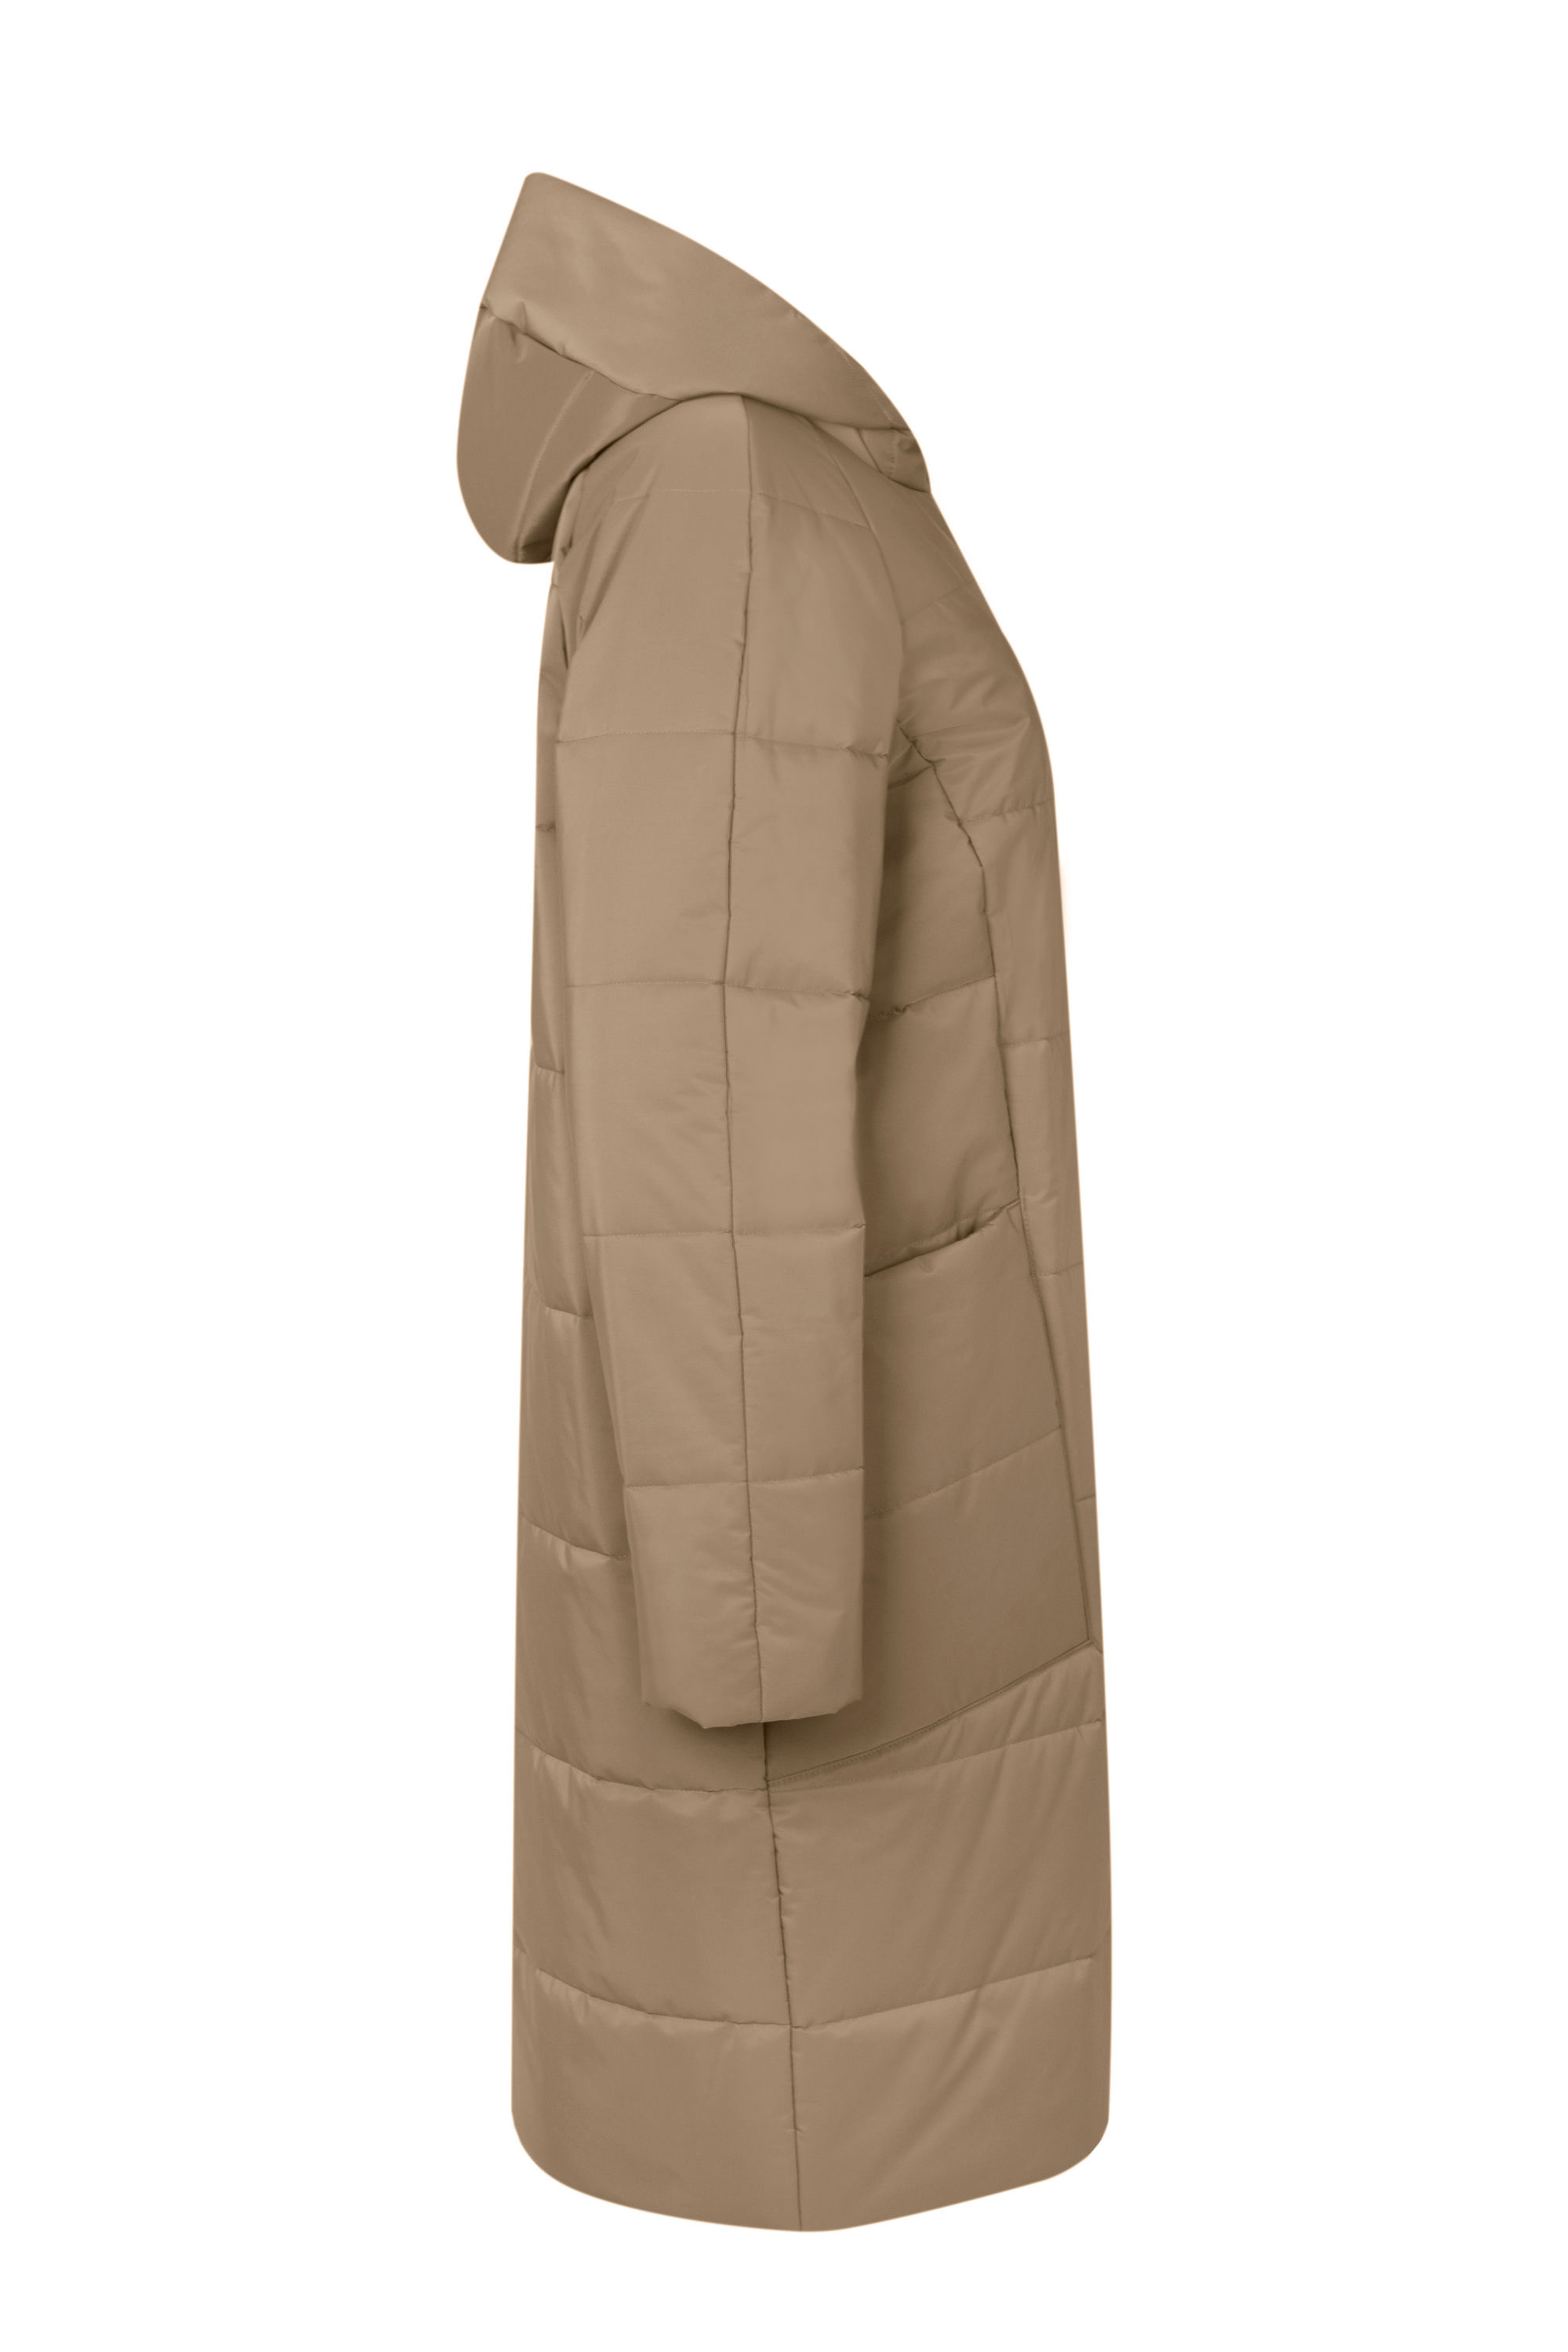 Пальто женское плащевое утепленное 5-12590-1. Фото 2.